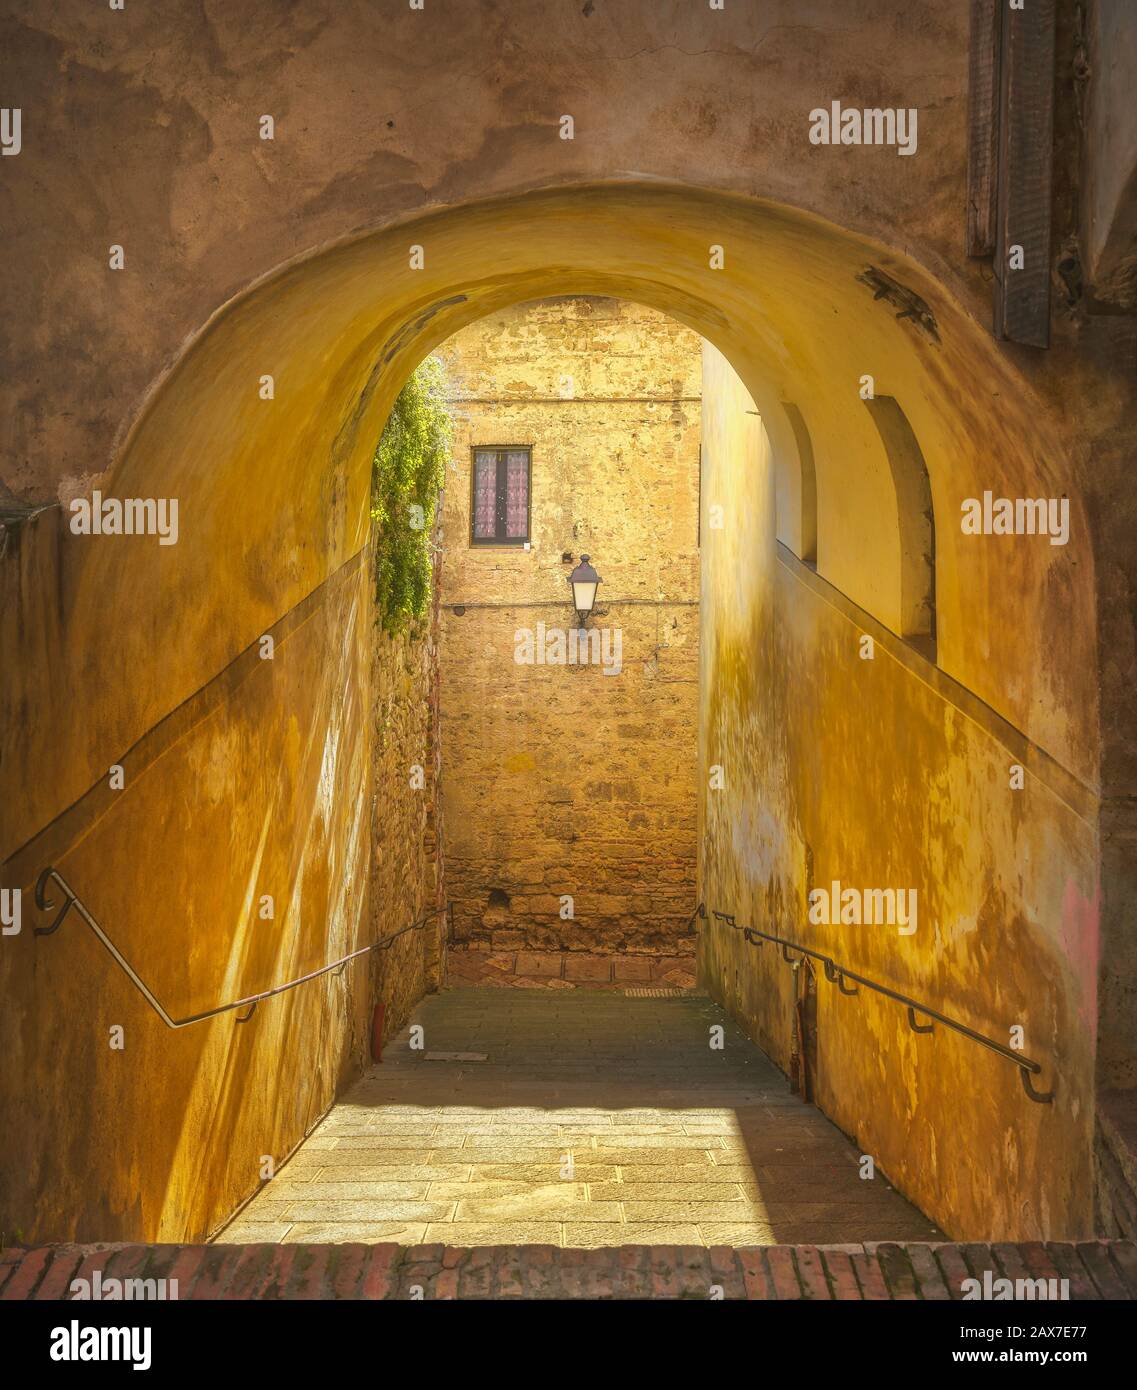 Colle Val d'Elsa, rue pittoresque et galerie dans la vieille ville. Sienne, Toscane, Italie. Banque D'Images